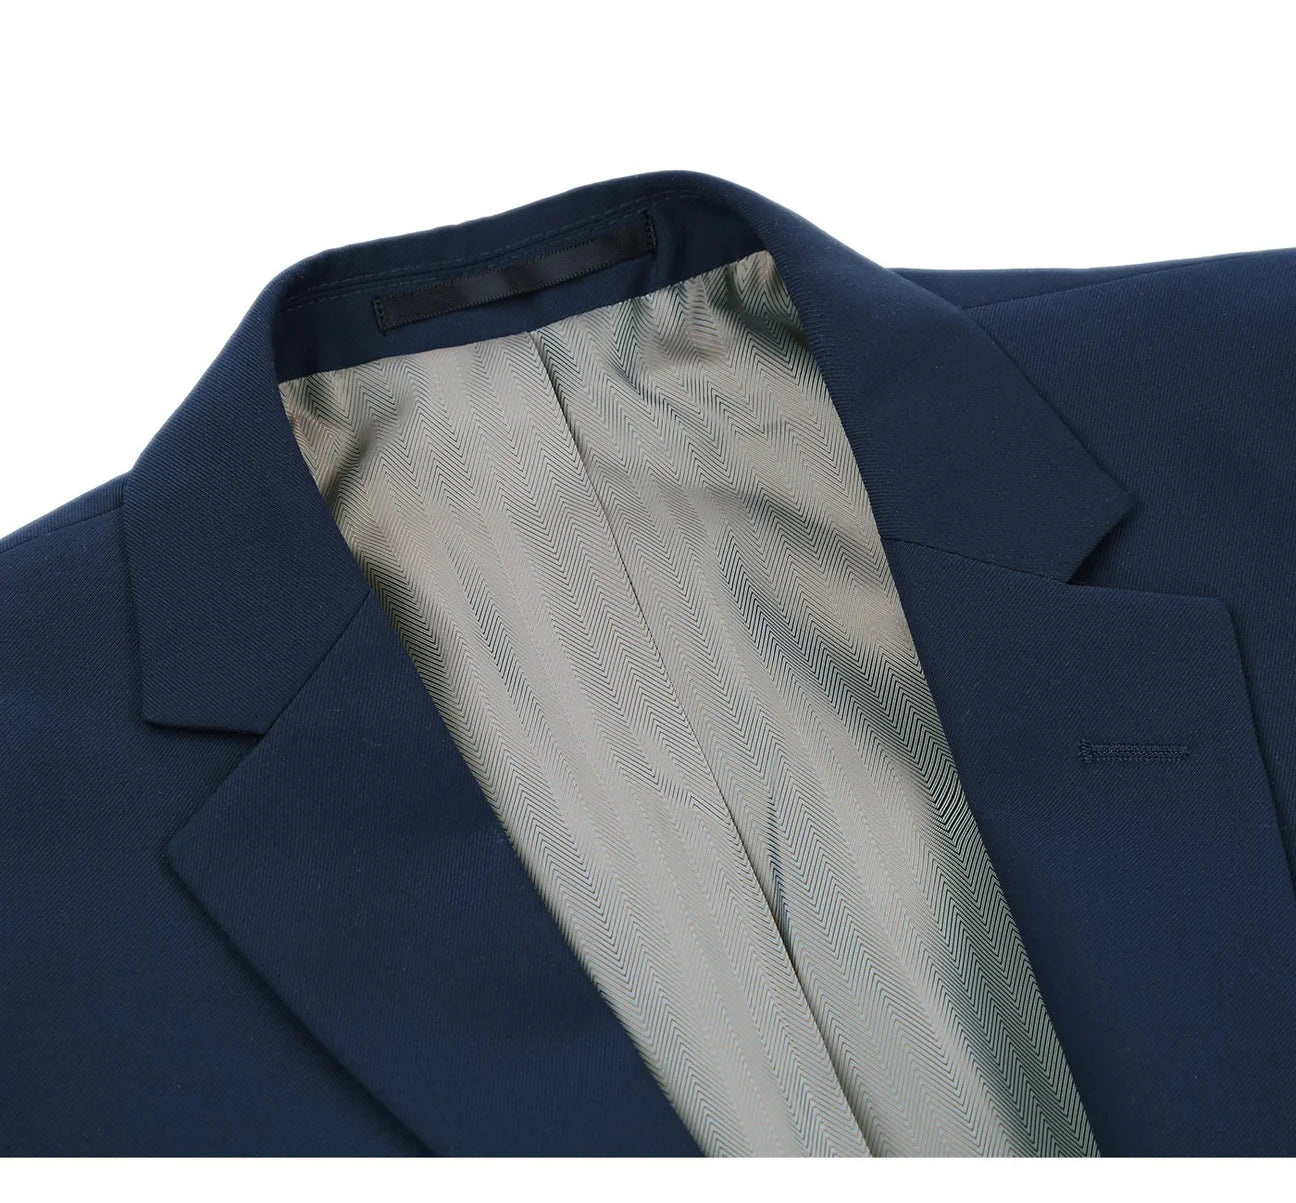 Renoir Classic Fit Navy 2 Button Notch Lapel Suit 201-19